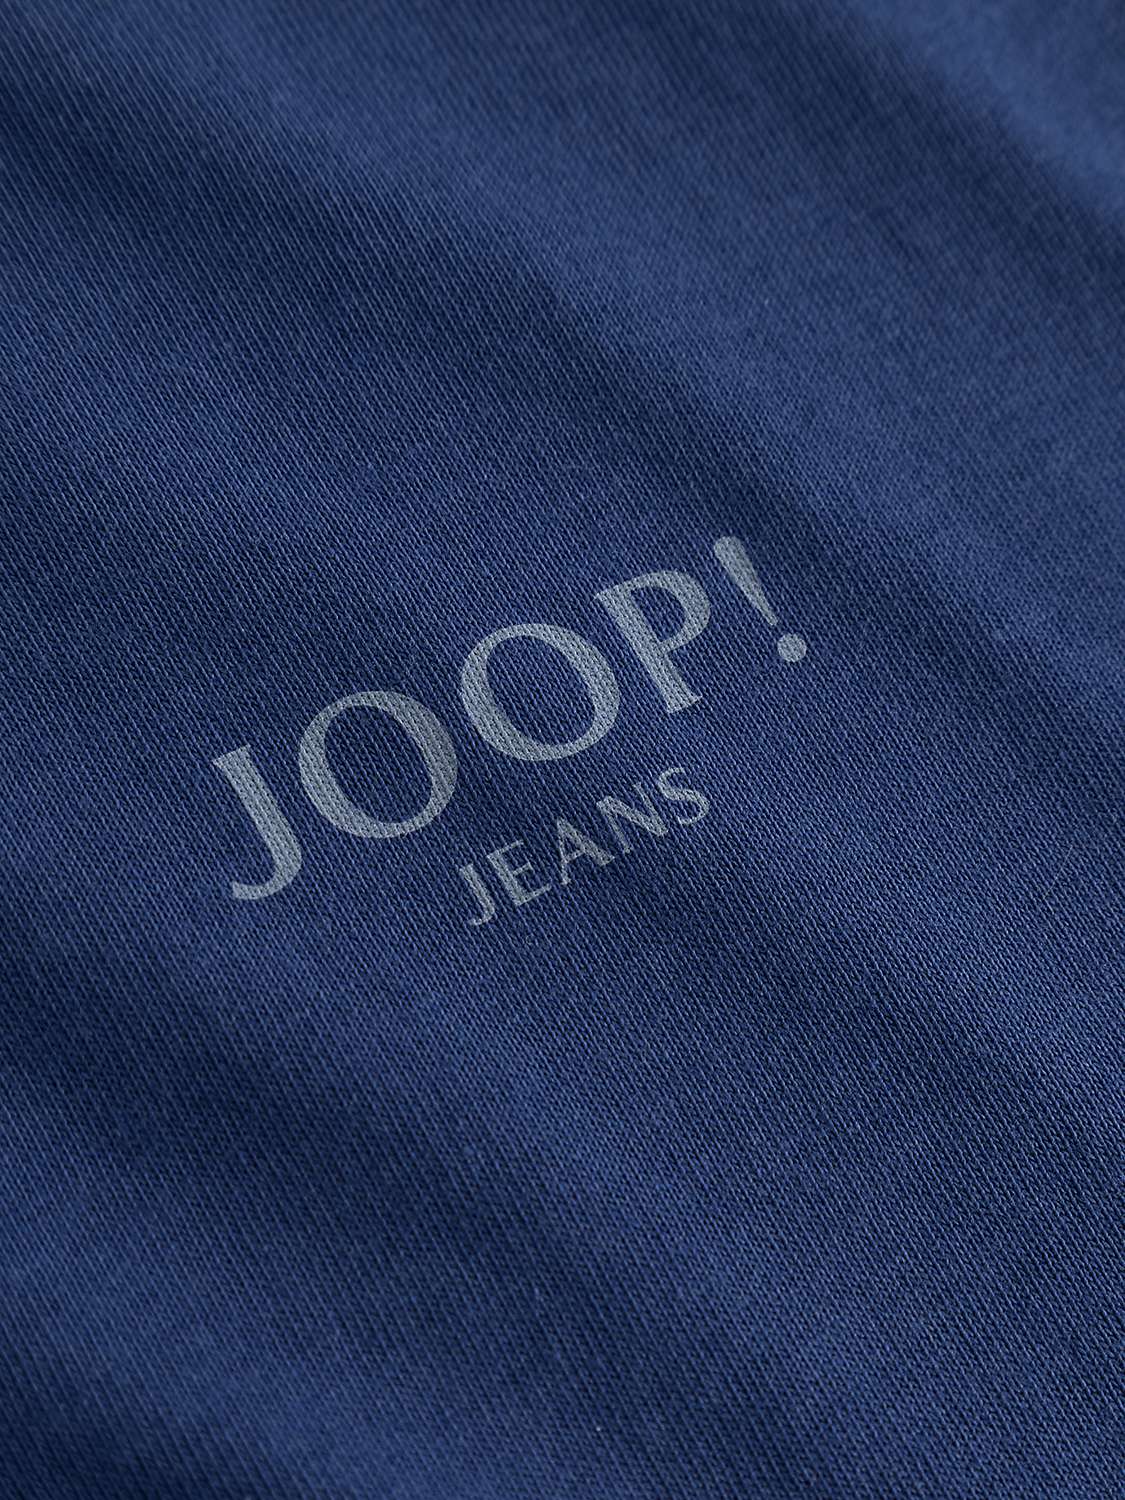 Buy JOOP! Alphis Crew Neck T-Shirt Online at johnlewis.com